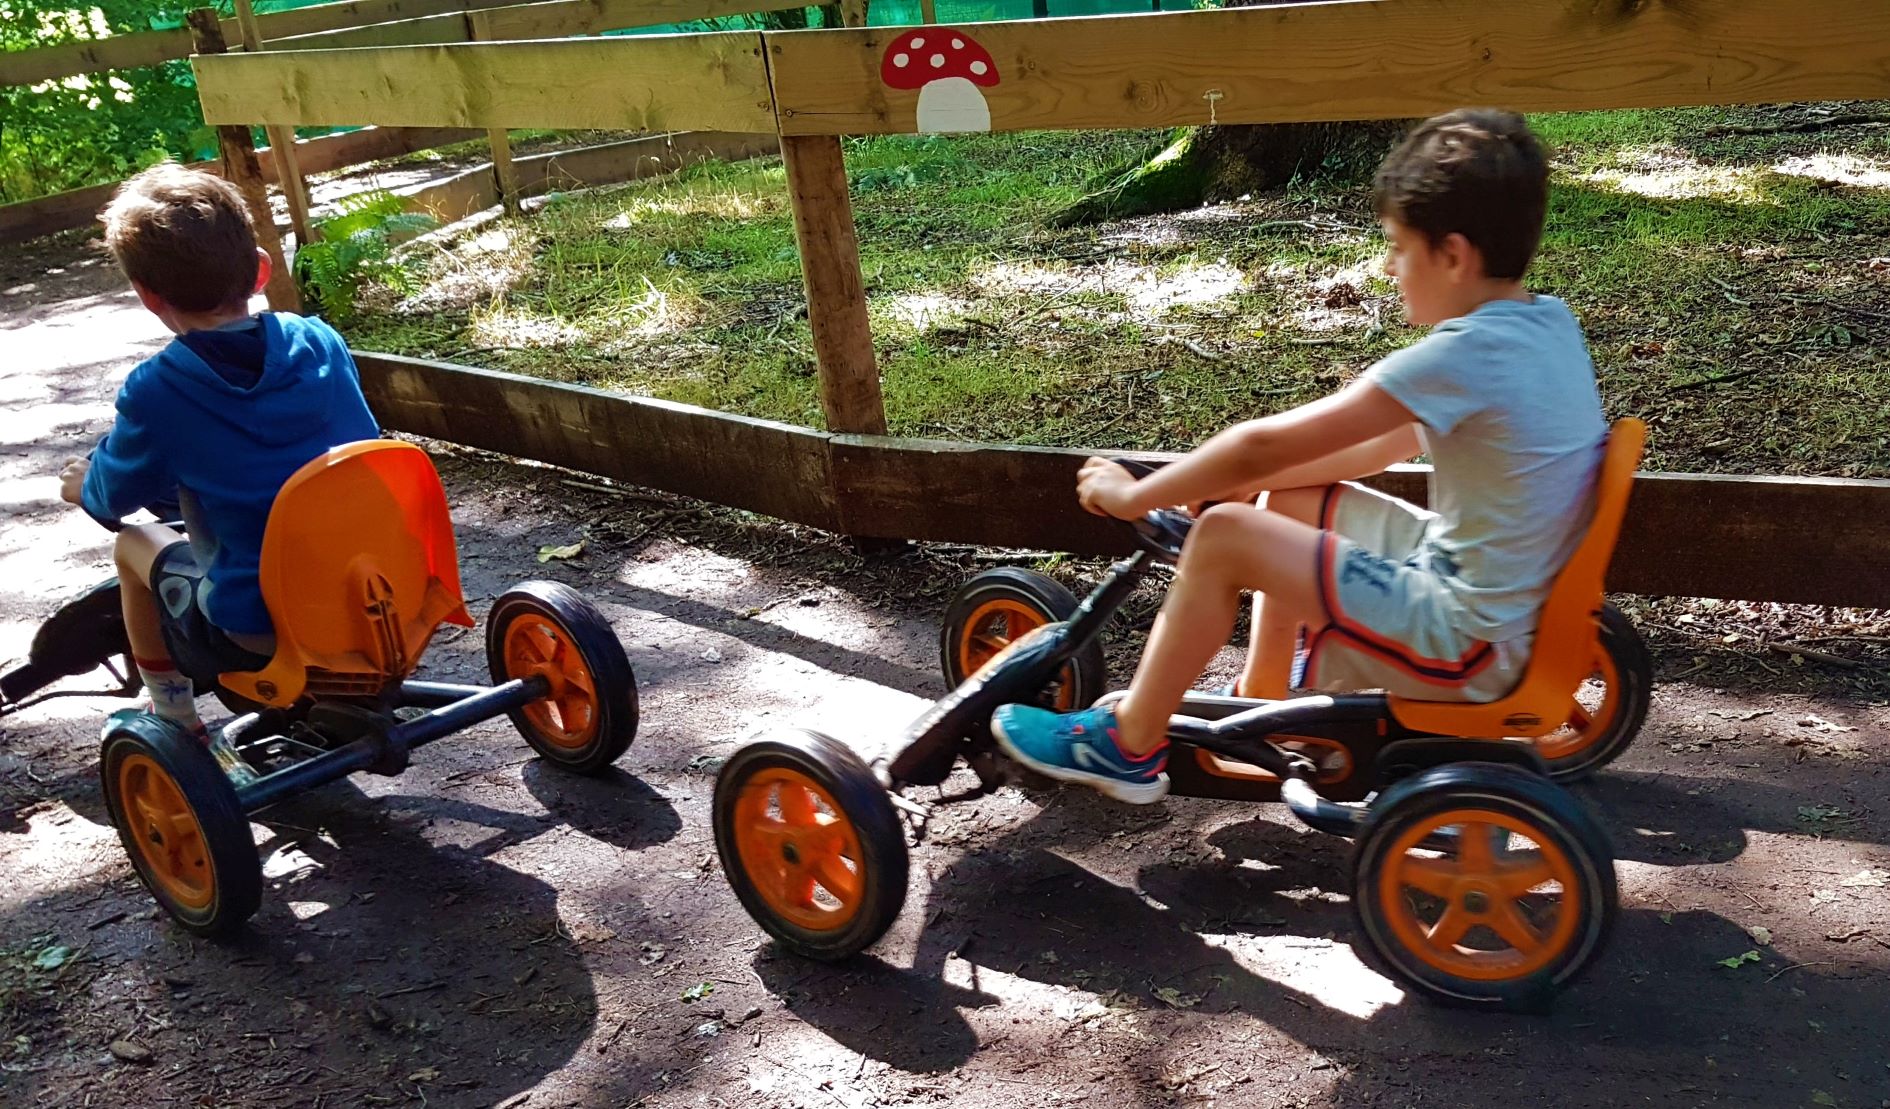 karts a pedales land aux lutins parc morbihan que faire avec enfants sortie en famille